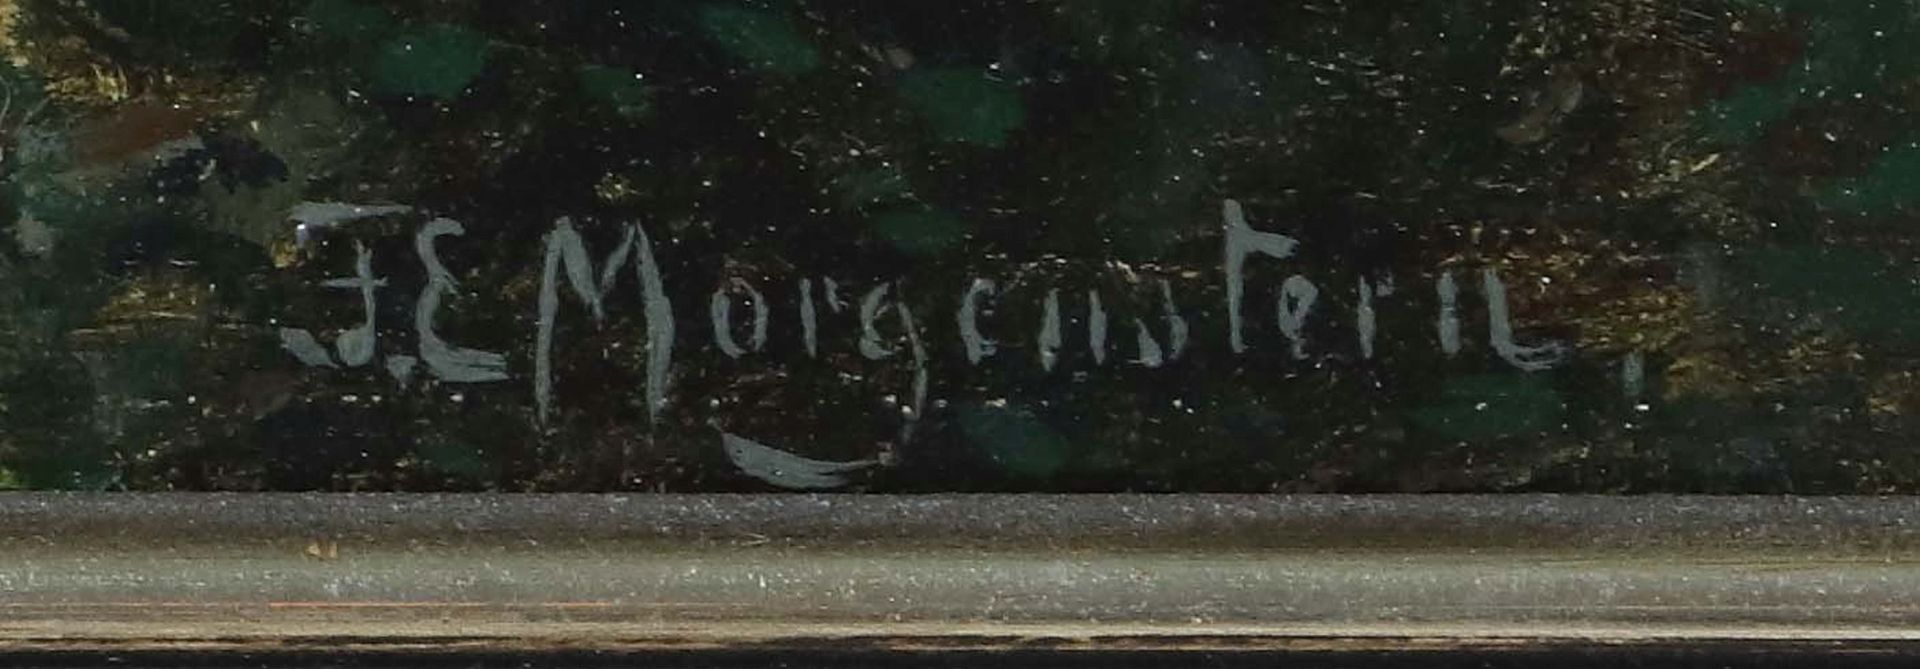 Morgenstern, Friedrich Ernst Frankfurt - Image 3 of 4